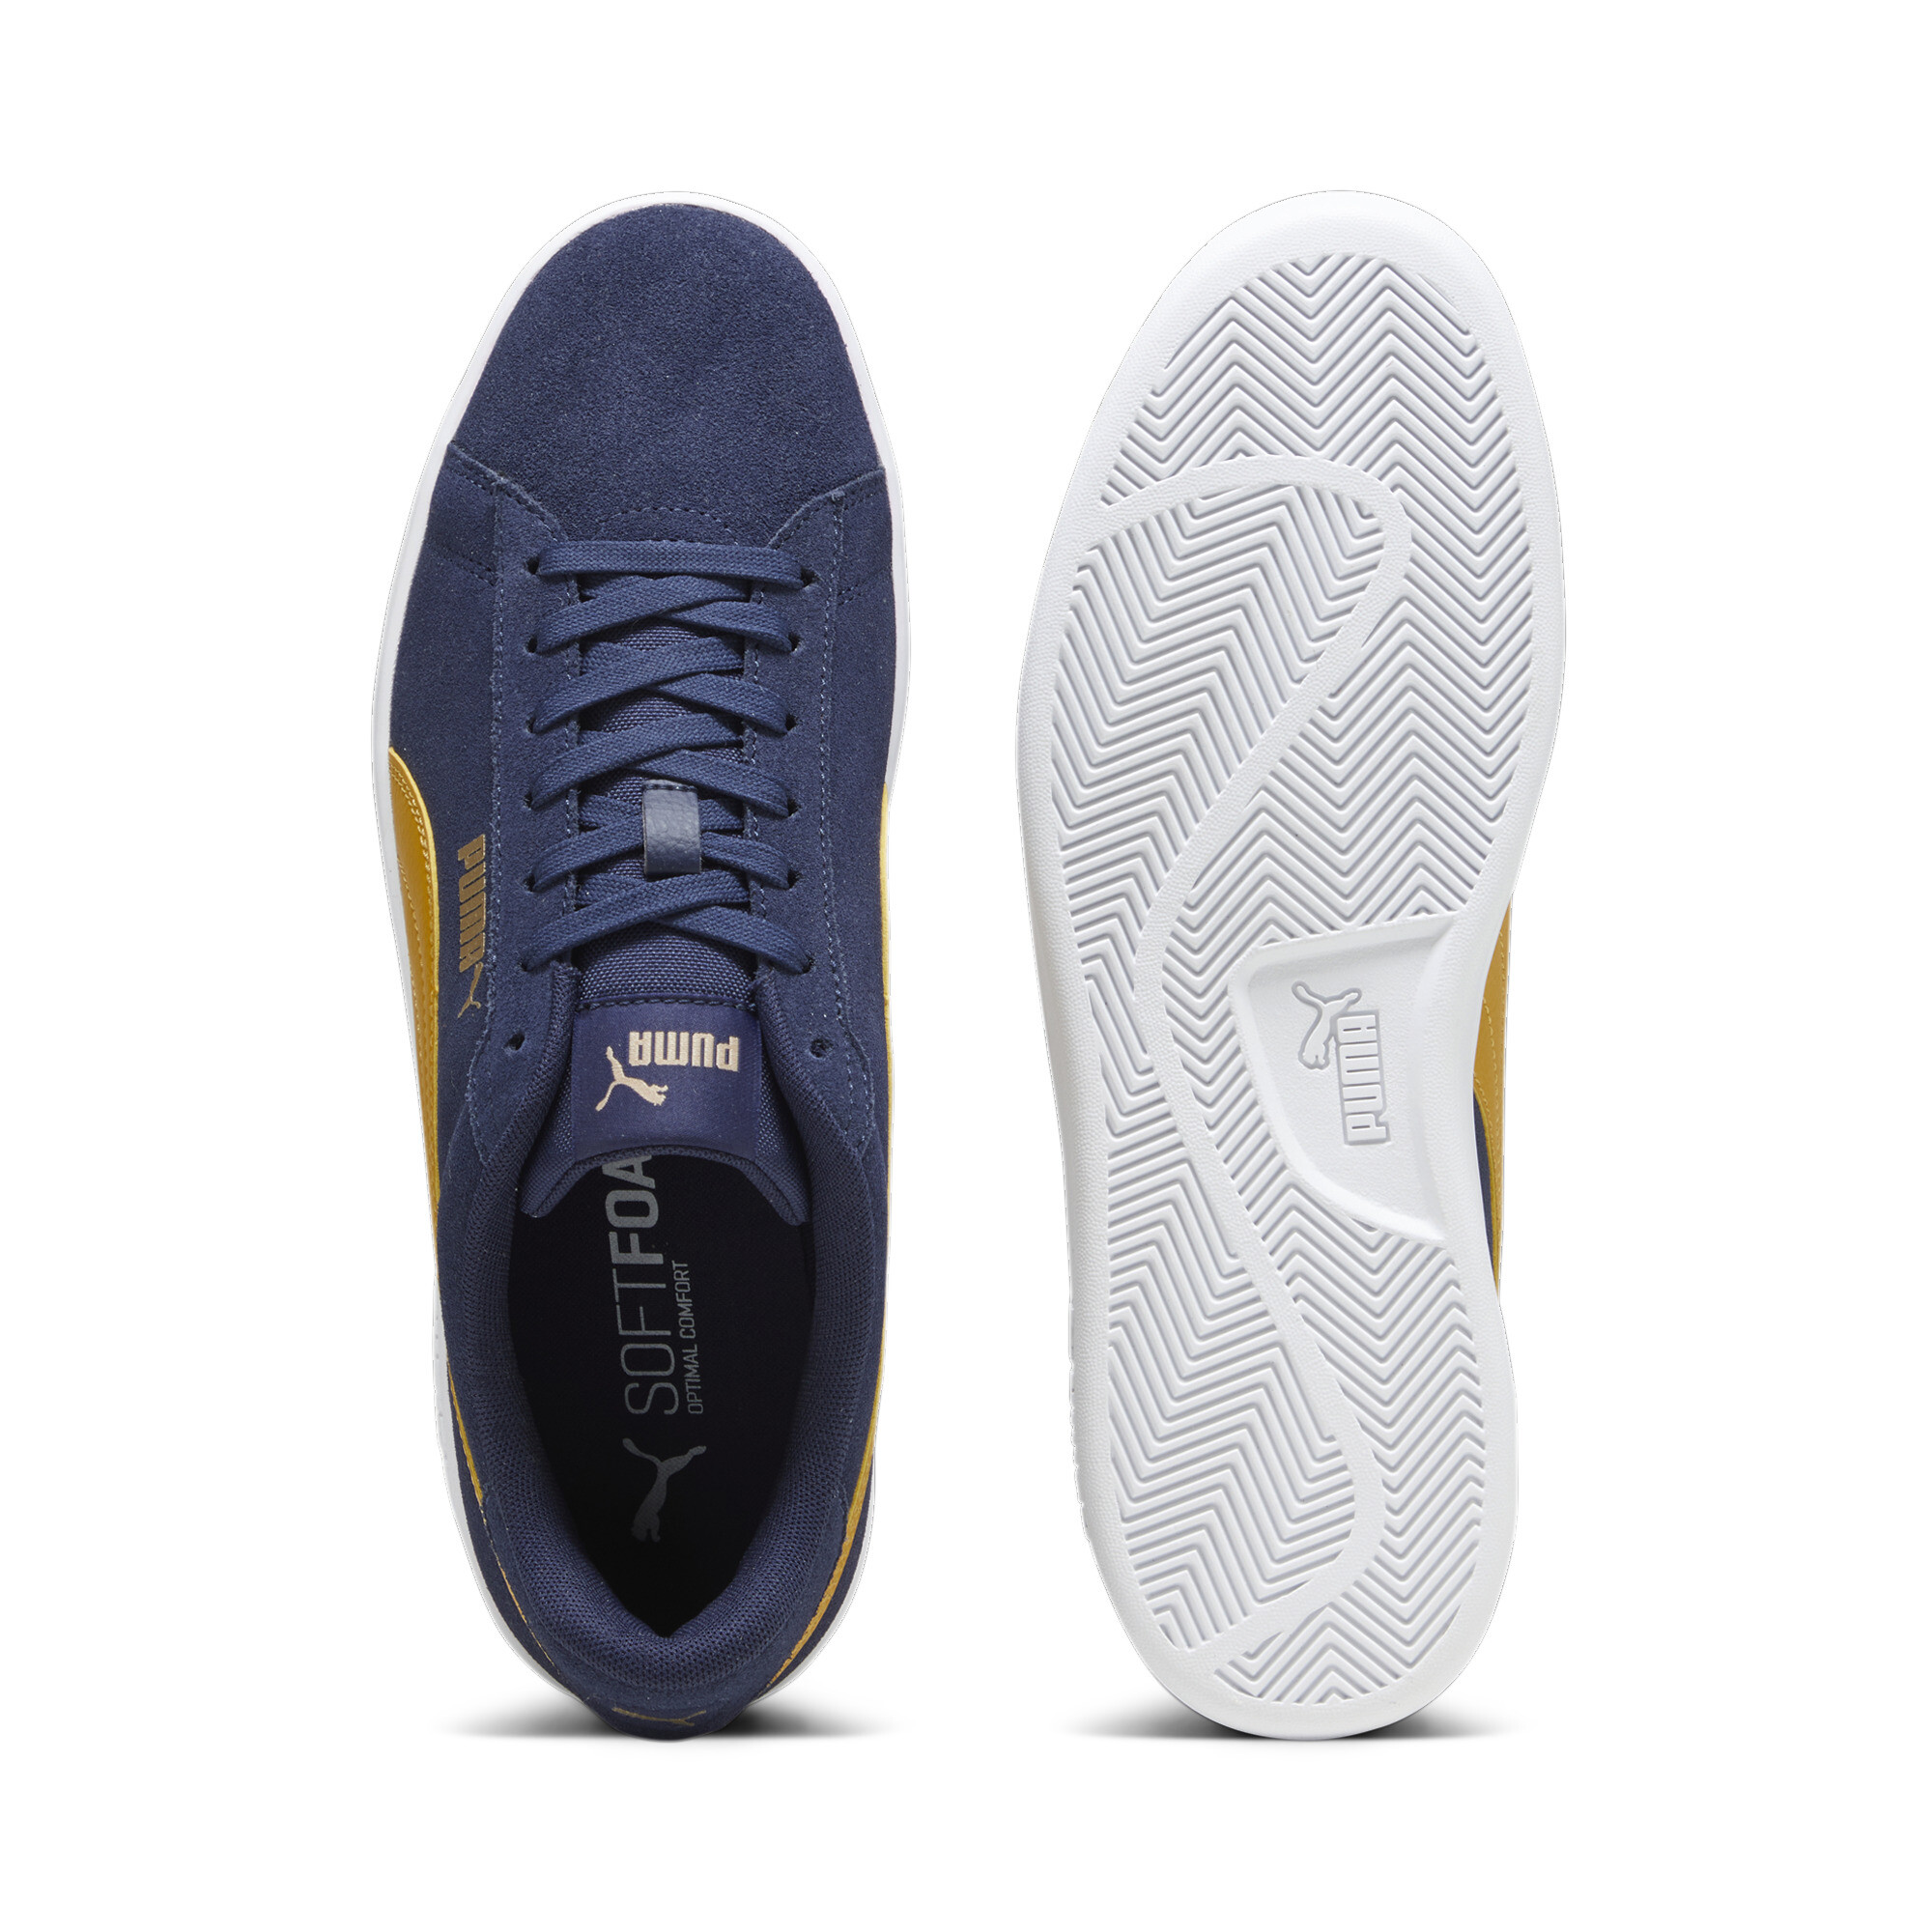 Puma Smash 3.0 Sneakers, Blue, Size 36, Shoes